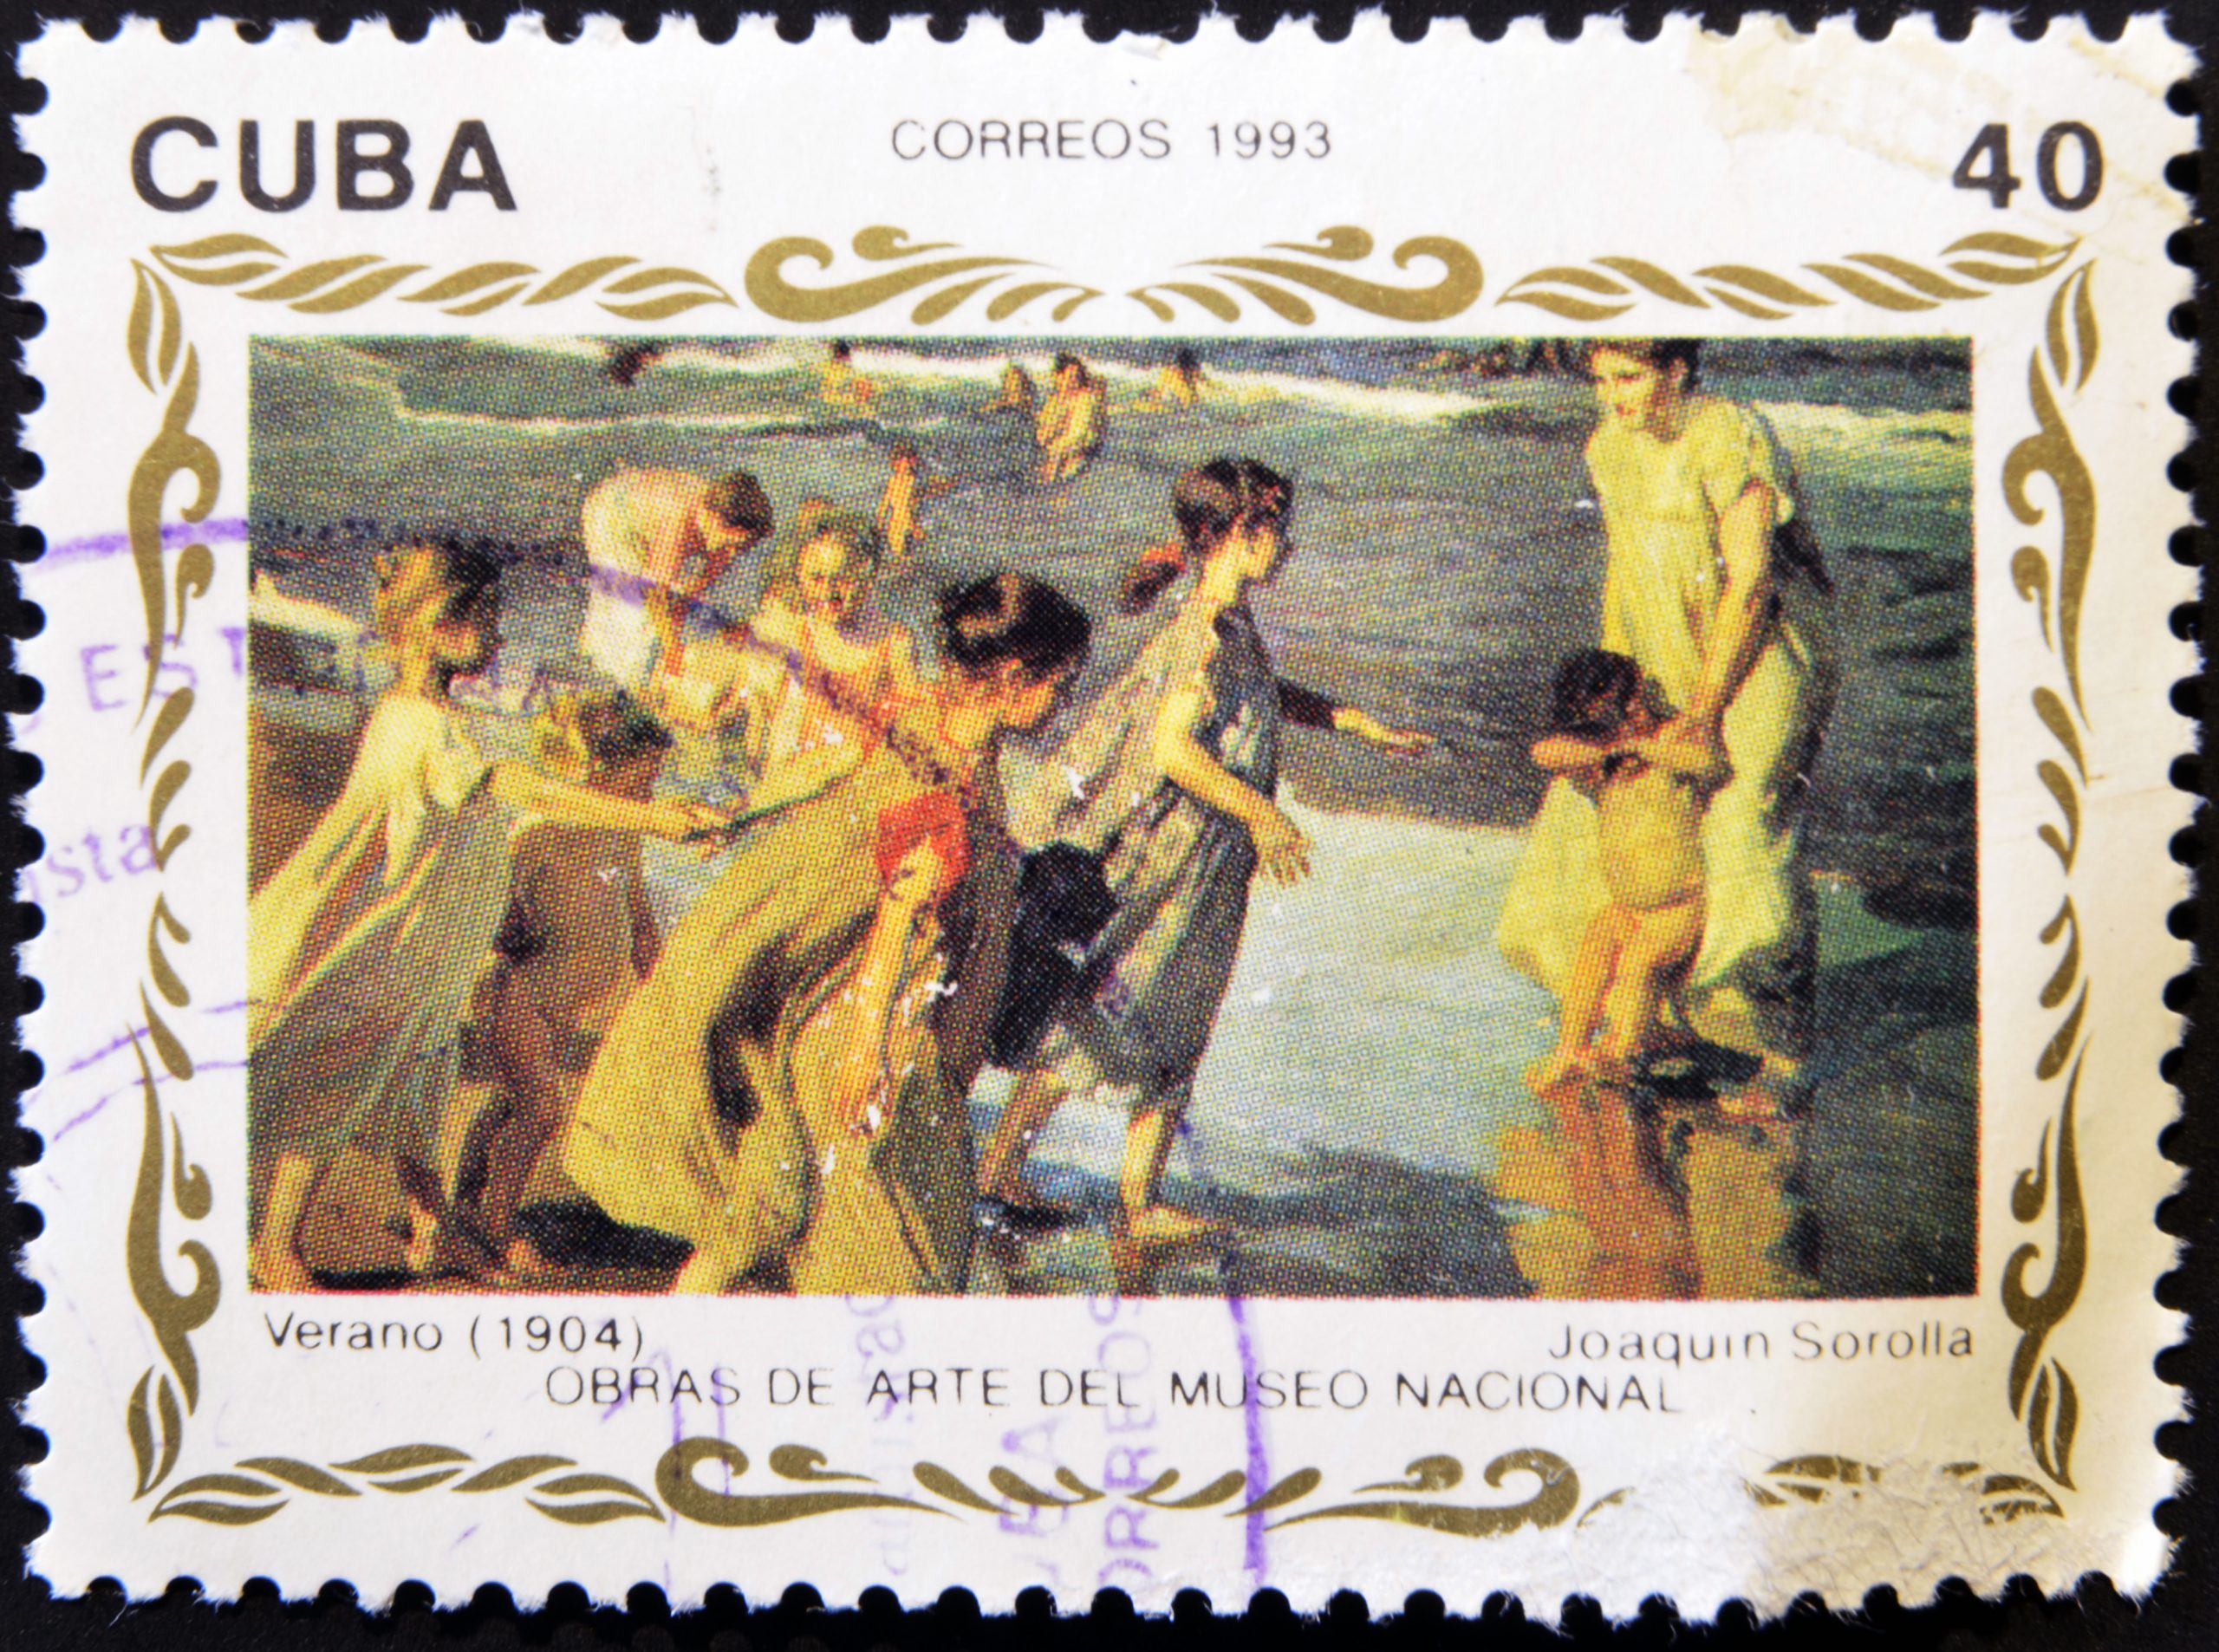 Cuba, ,circa,1993:,a,stamp,printed,in,cuba,shows